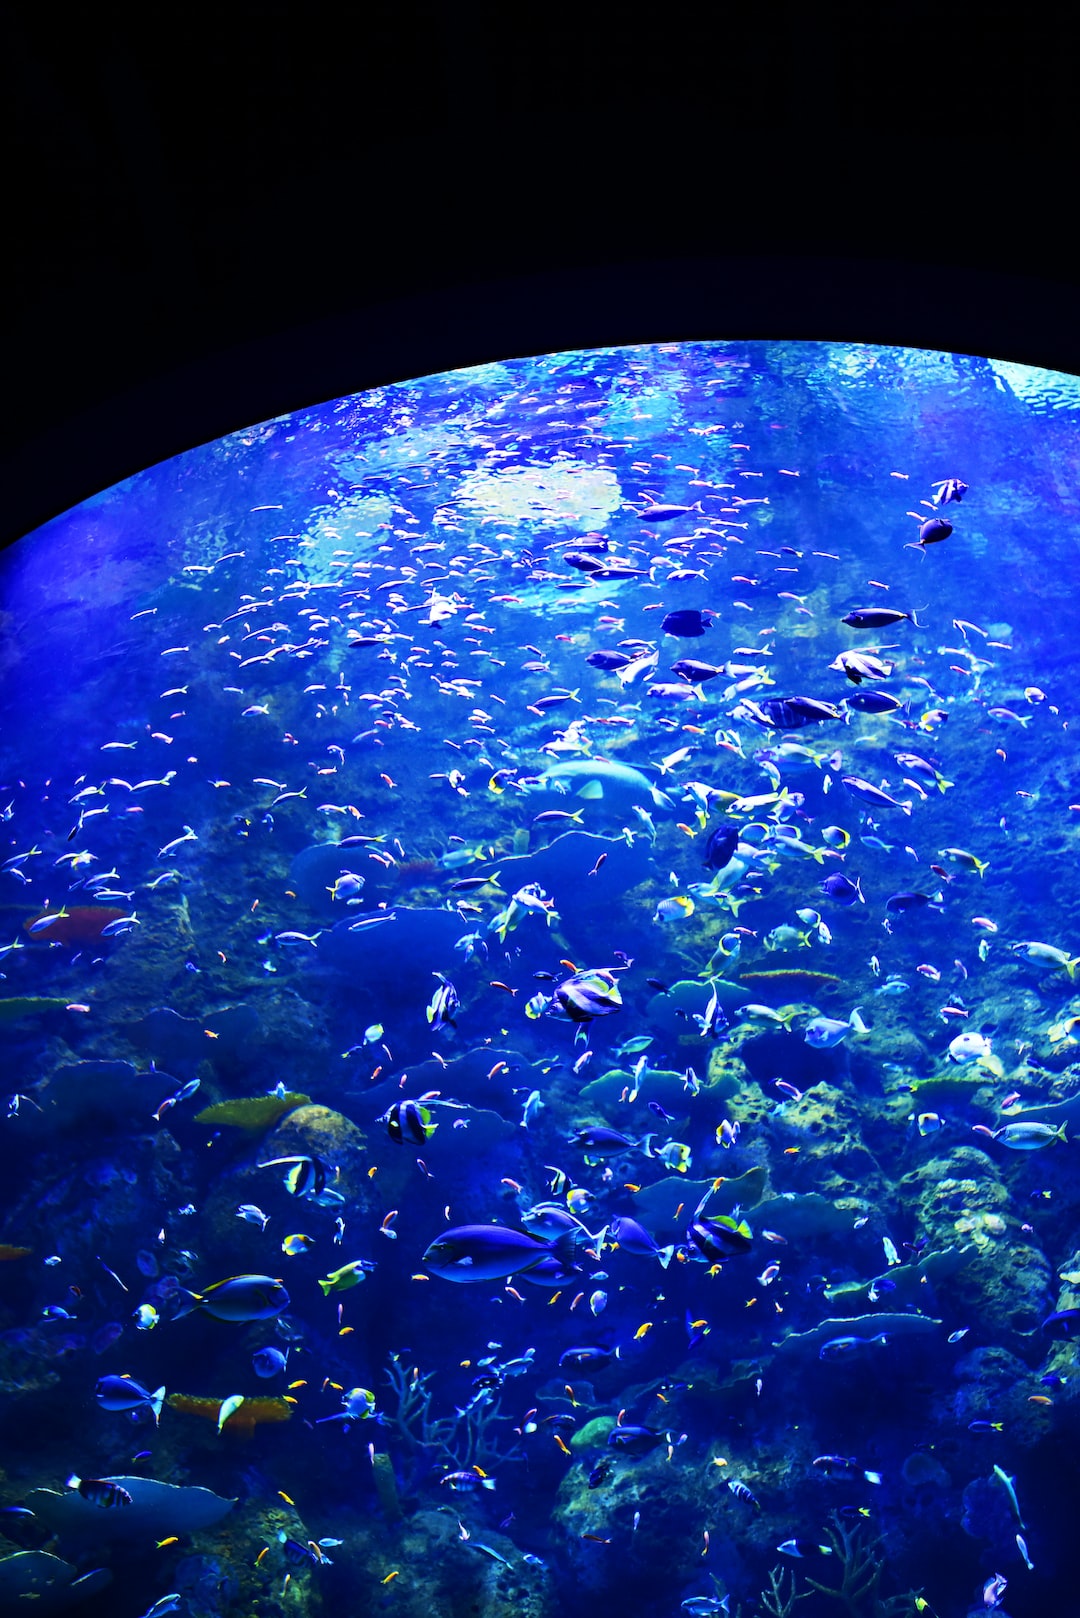 22 wichtige Fragen zu Wie Viel Kostet Ein 60l Aquarium?